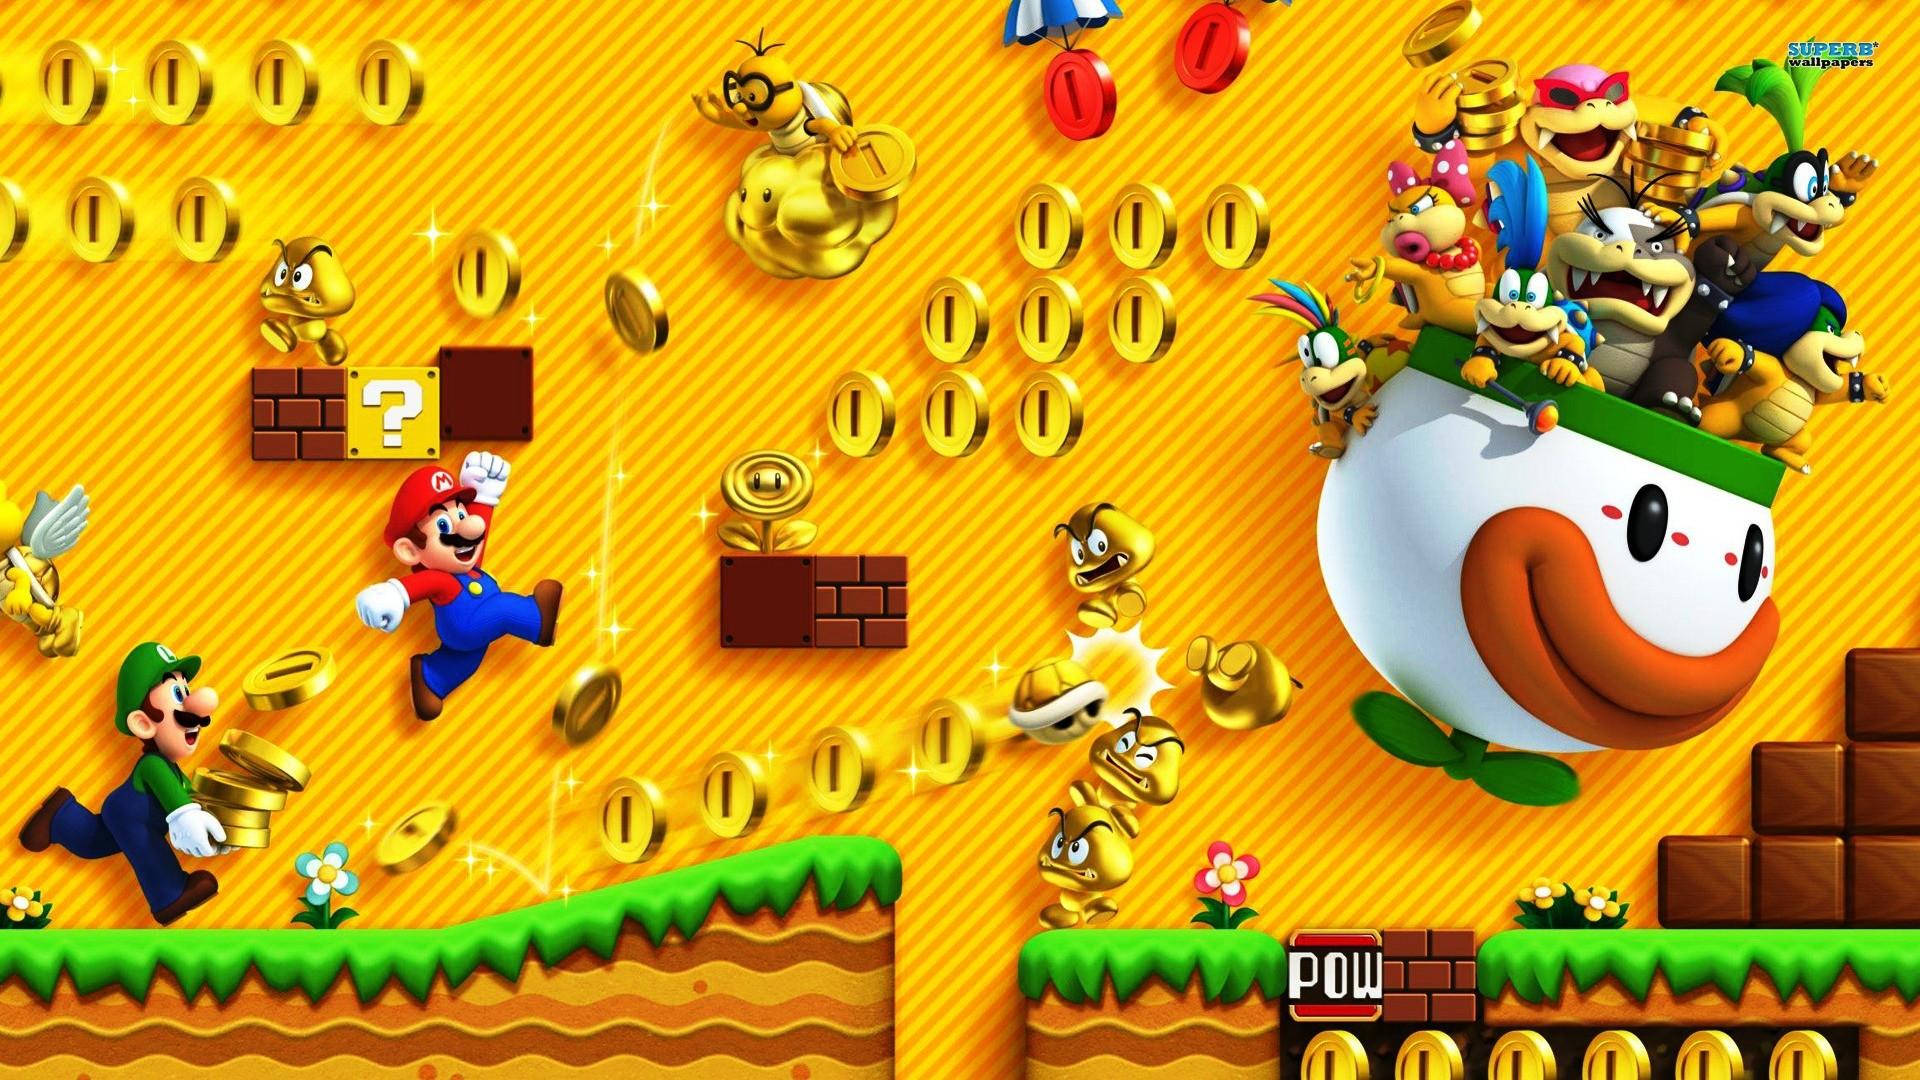 Mario Bros 3 Wallpapers Top Free Mario Bros 3 Backgro - vrogue.co